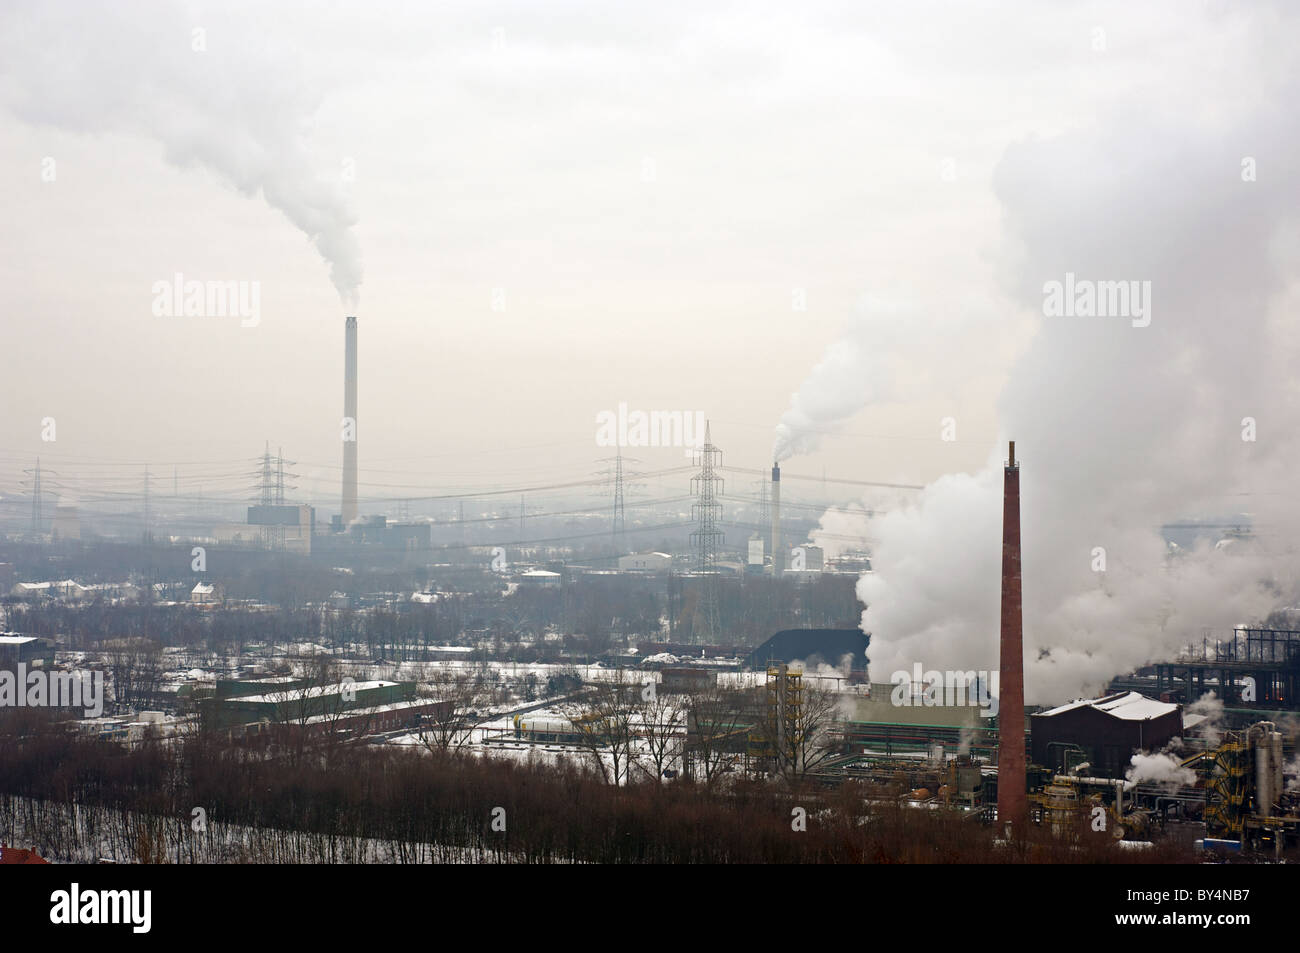 La industria pesada, Bottrop, Alemania. Foto de stock